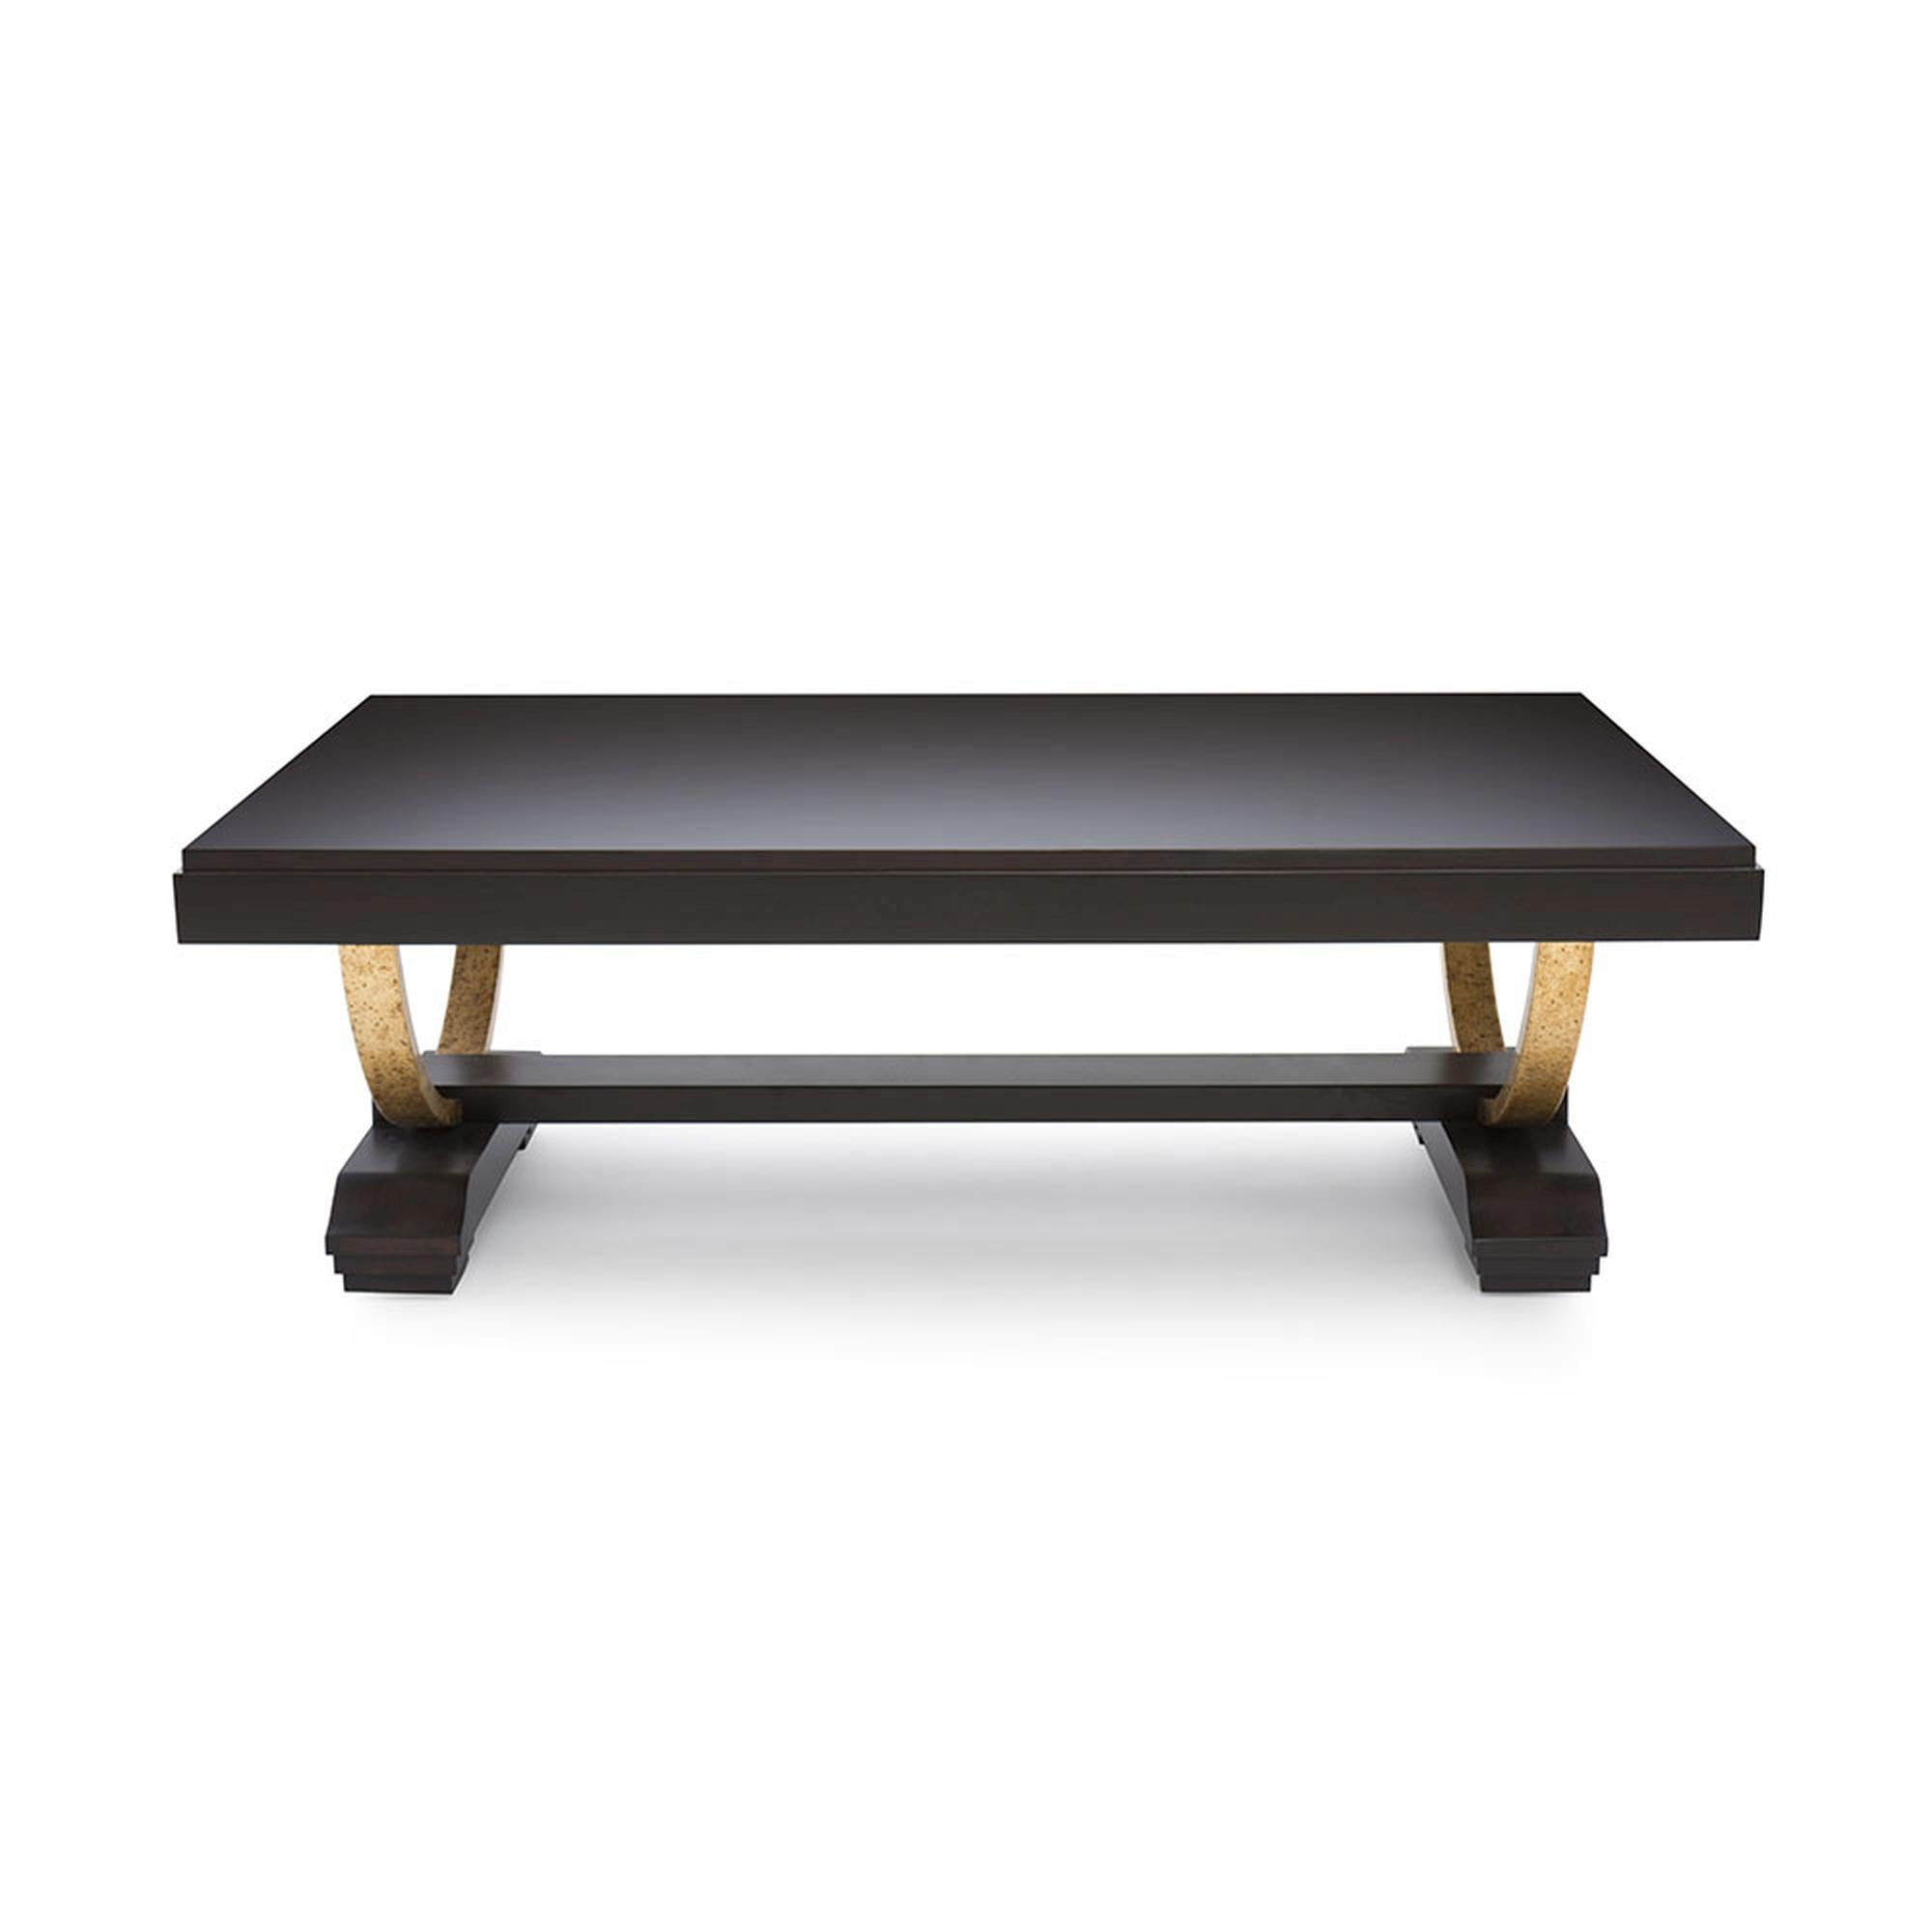 Der Couchtisch Bel Air ist ein Kunstwerk mit einem aktualisierten klassischen Design. Die robuste, massive Holzplatte ruht auf u-förmigen Metallbeinen, die wiederum von einem Holzsockel getragen werden. Der in Handarbeit gefertigte Tisch ist ein